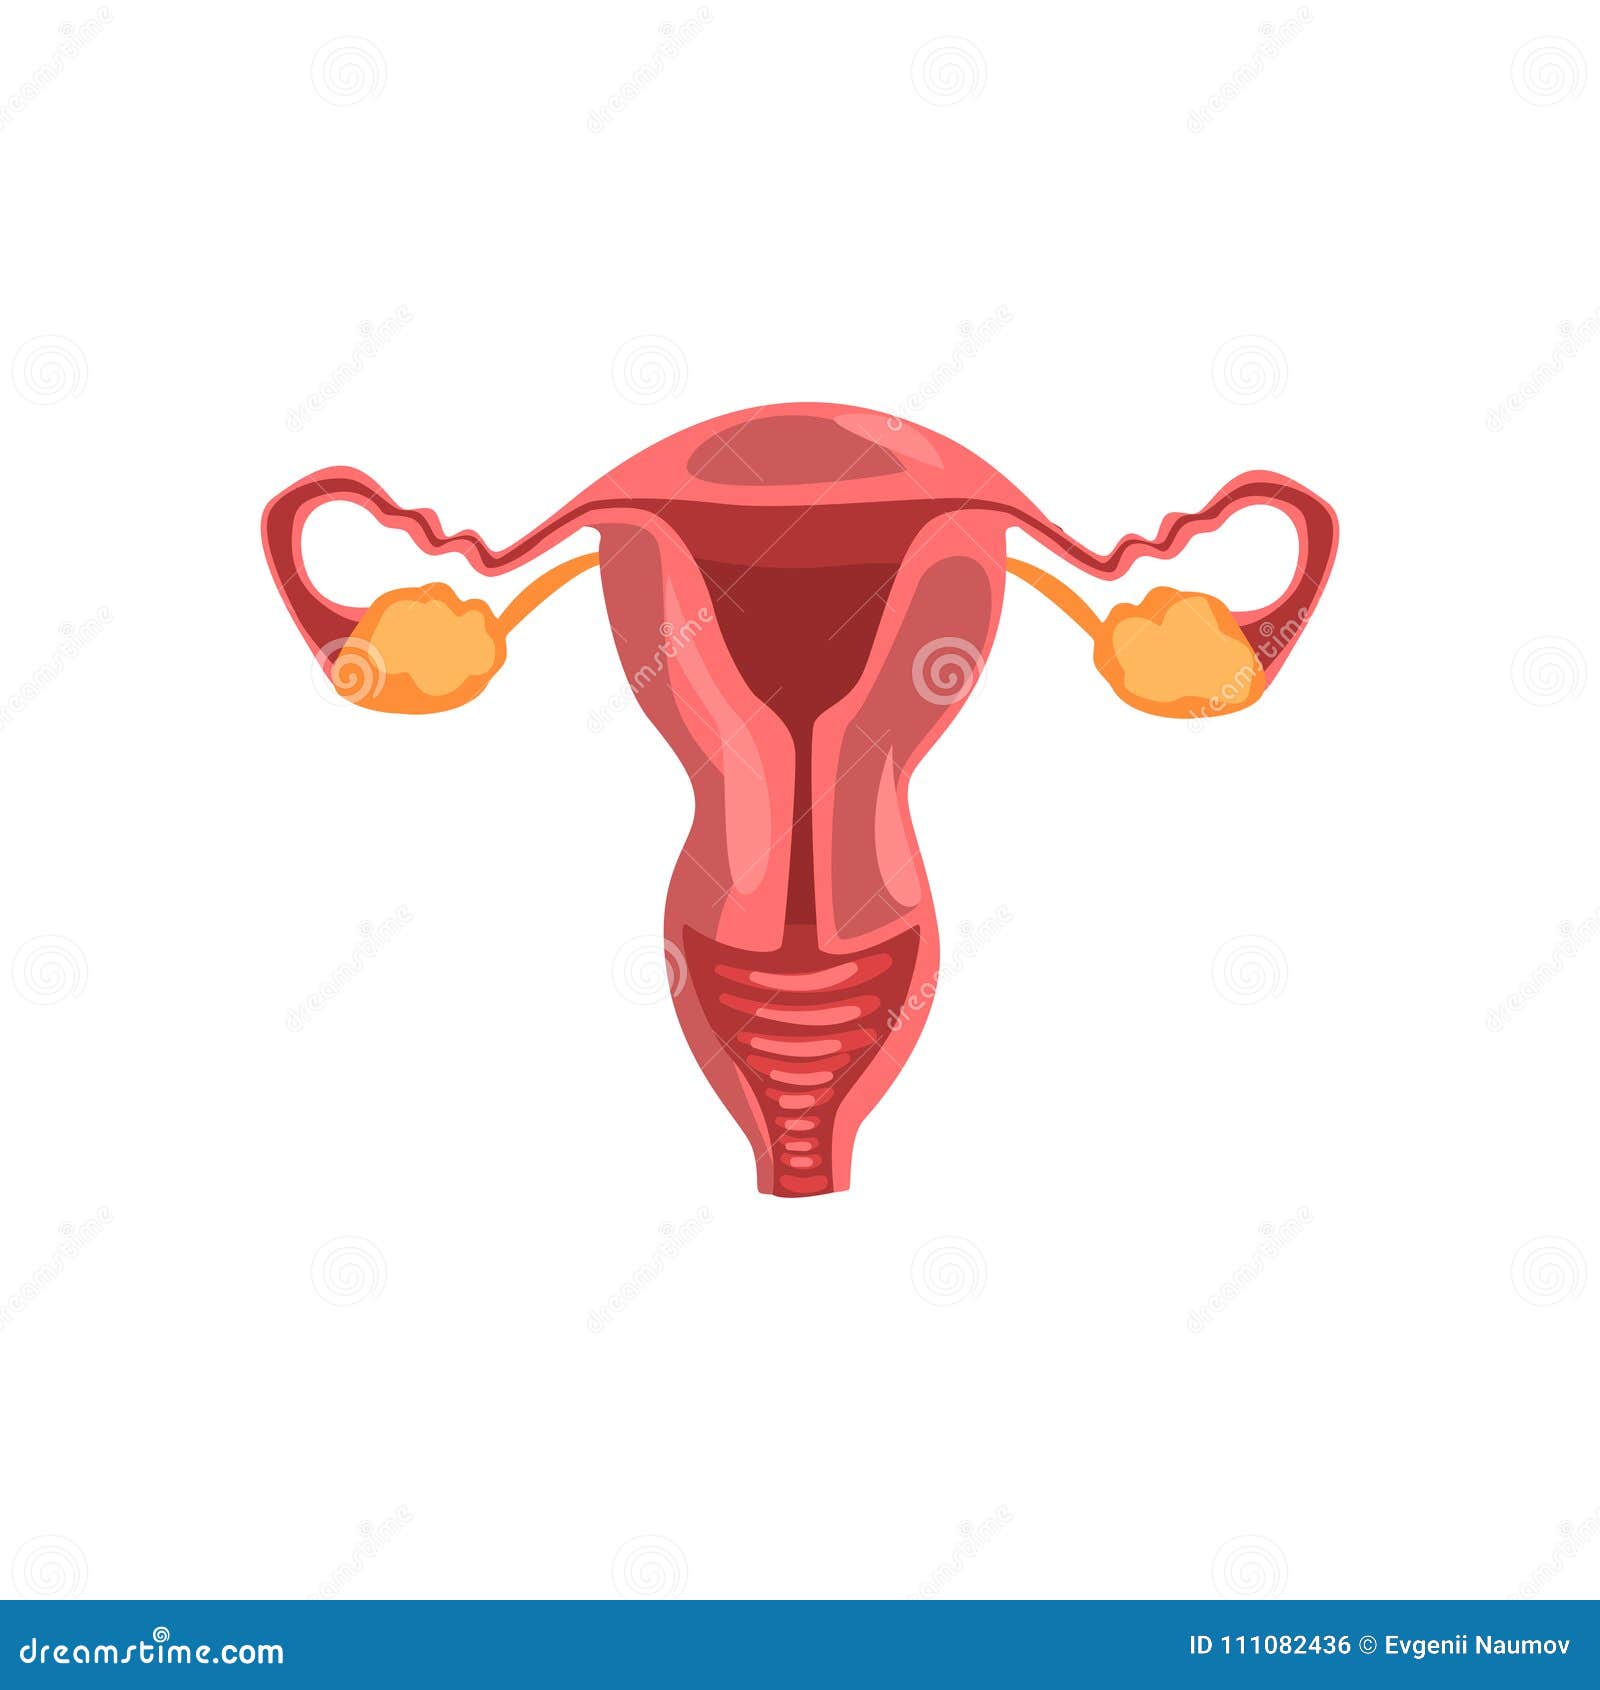 10 женских органов. Макет женских репродуктивных органов. Гинекология иллюстрации. Репродуктивная система вектор. Женская репродуктивная система 3d модель.